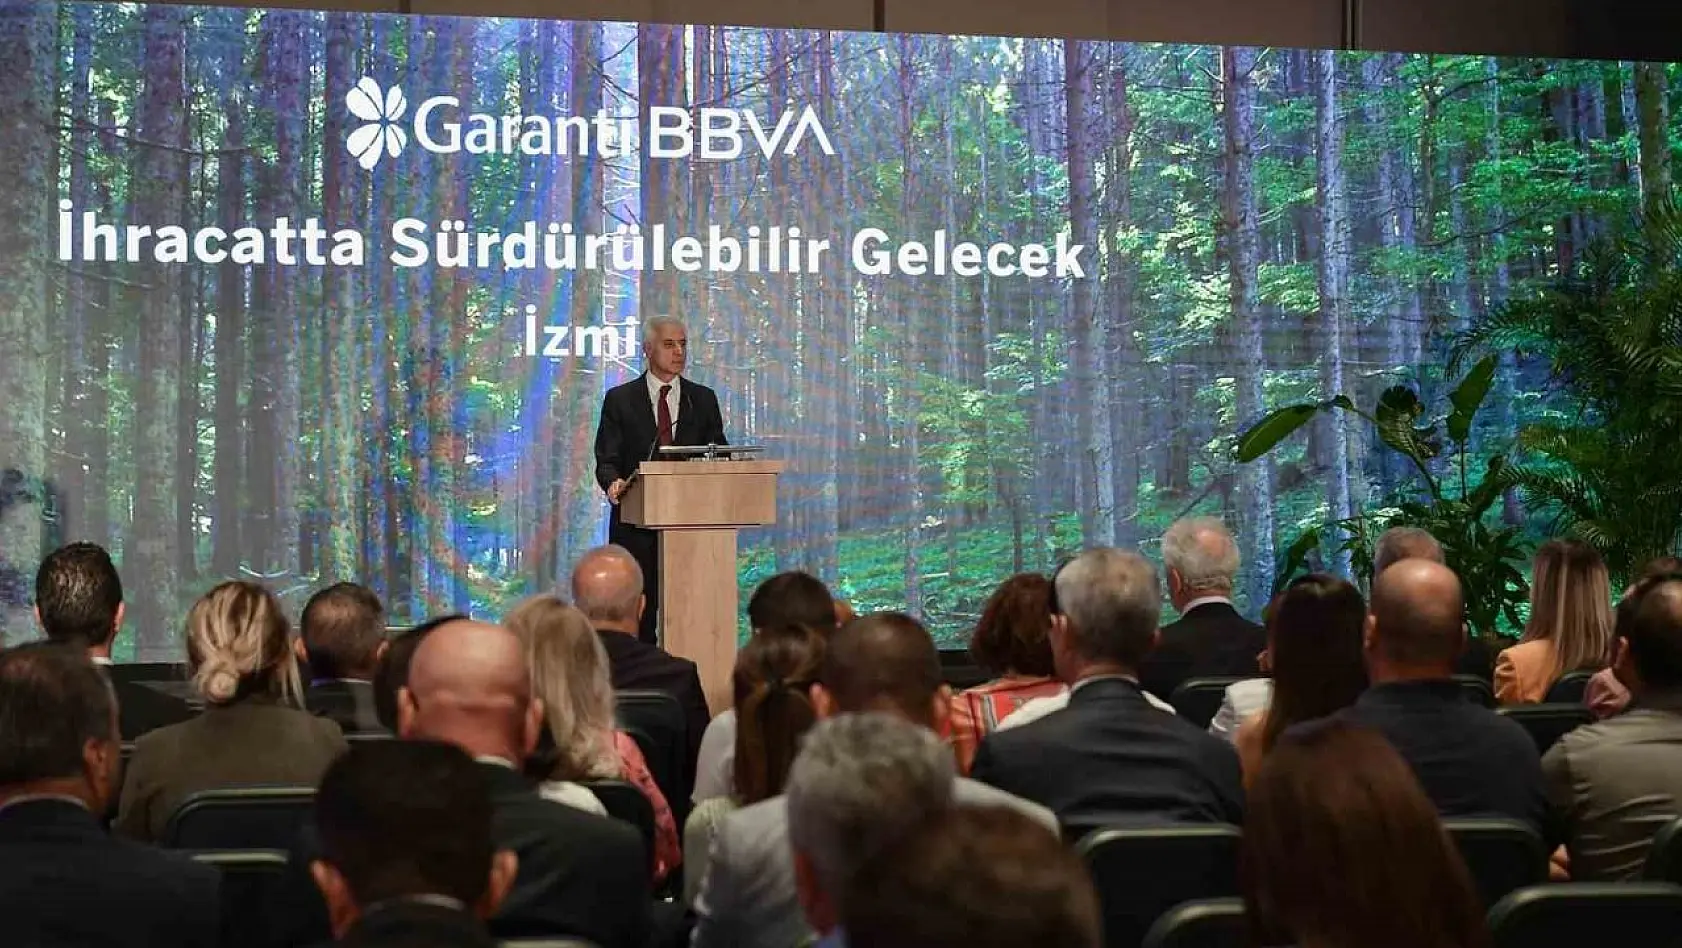 Garanti BBVA ile 'İhracatta Sürdürülebilir Gelecek' buluşmalarının üçüncüsü İzmir'de gerçekleşti